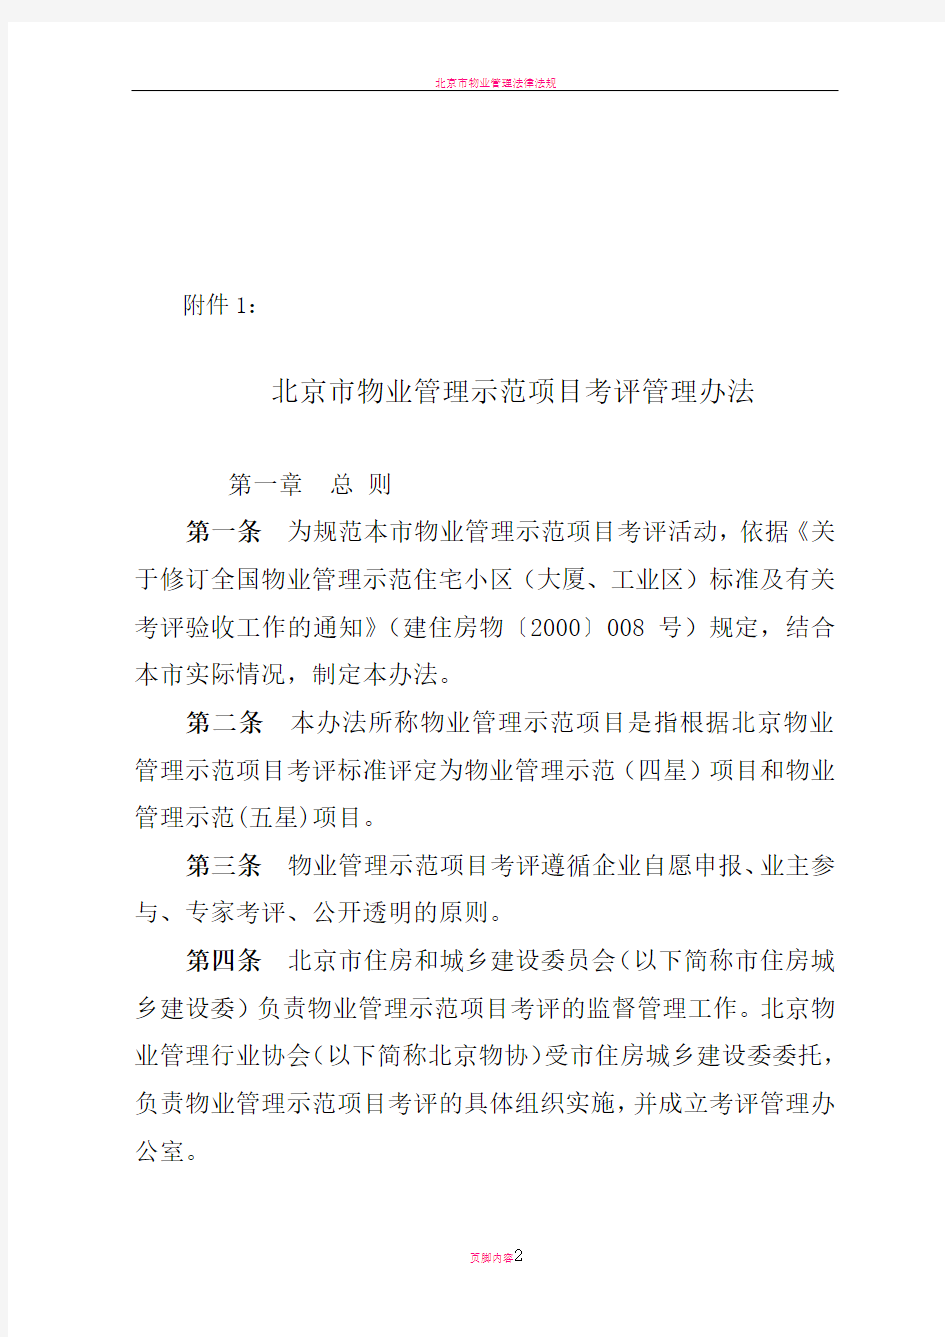 北京市物业管理示范项目考评管理办法及评分细则